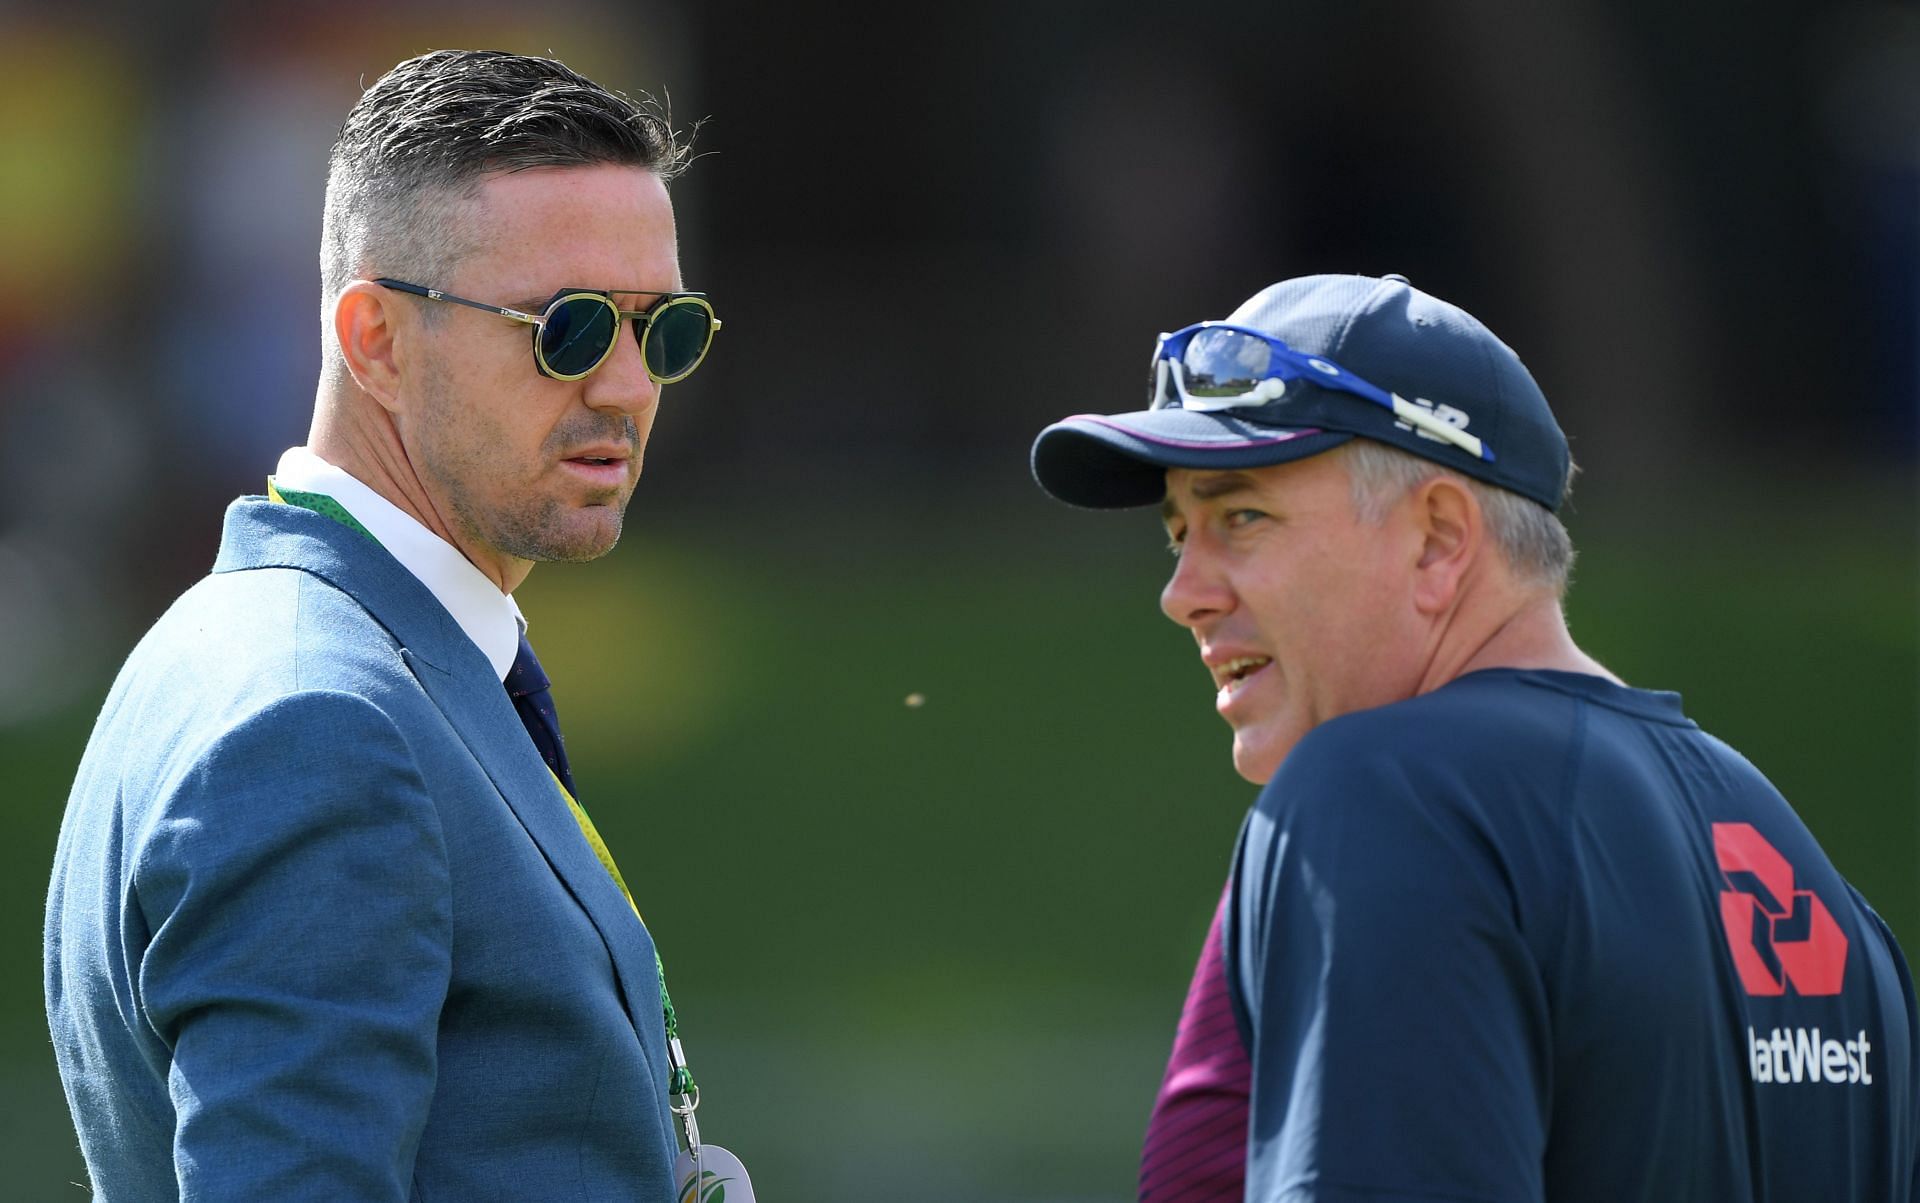 केविन पीटरसन ने इंग्लैंड टीम के सिस्टम में खामियां बताते हुए कई बार अपनी प्रतिक्रिया दी है